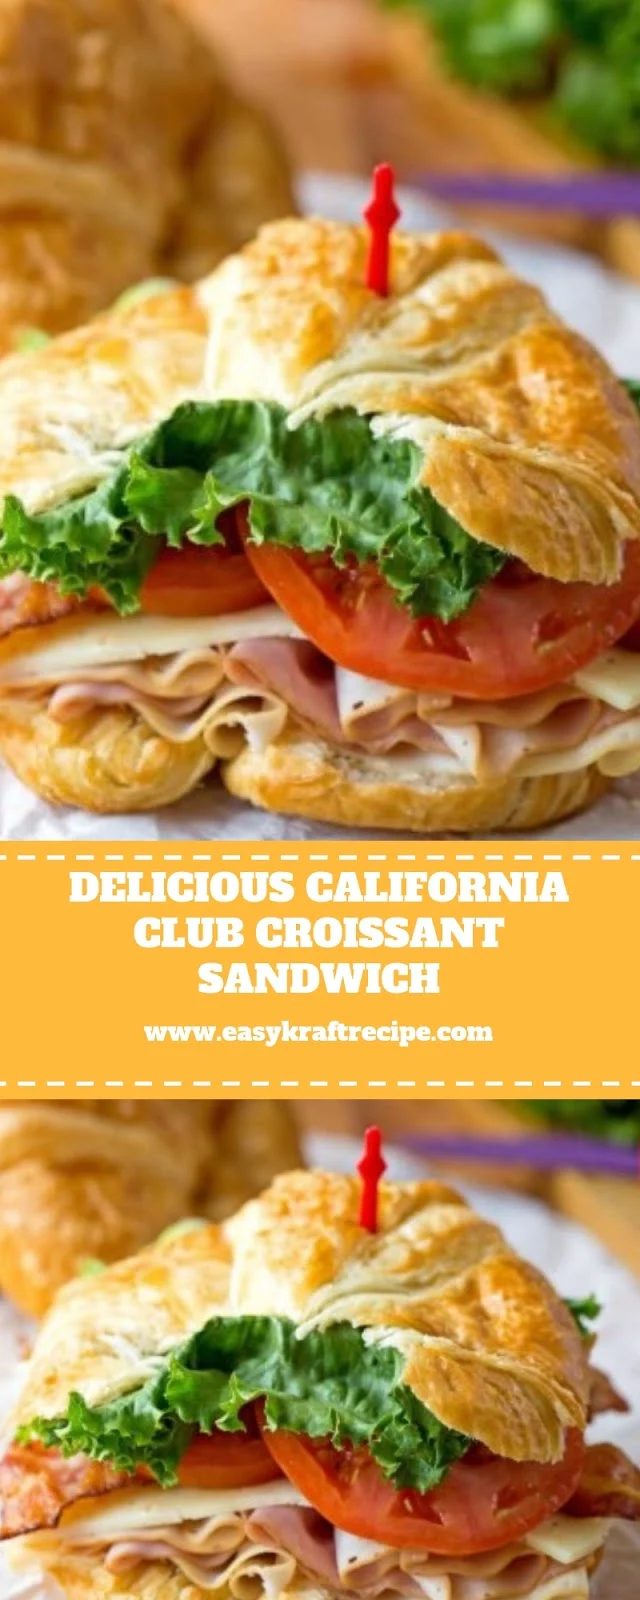 CALIFORNIA CLUB CROISSANT SANDWICH